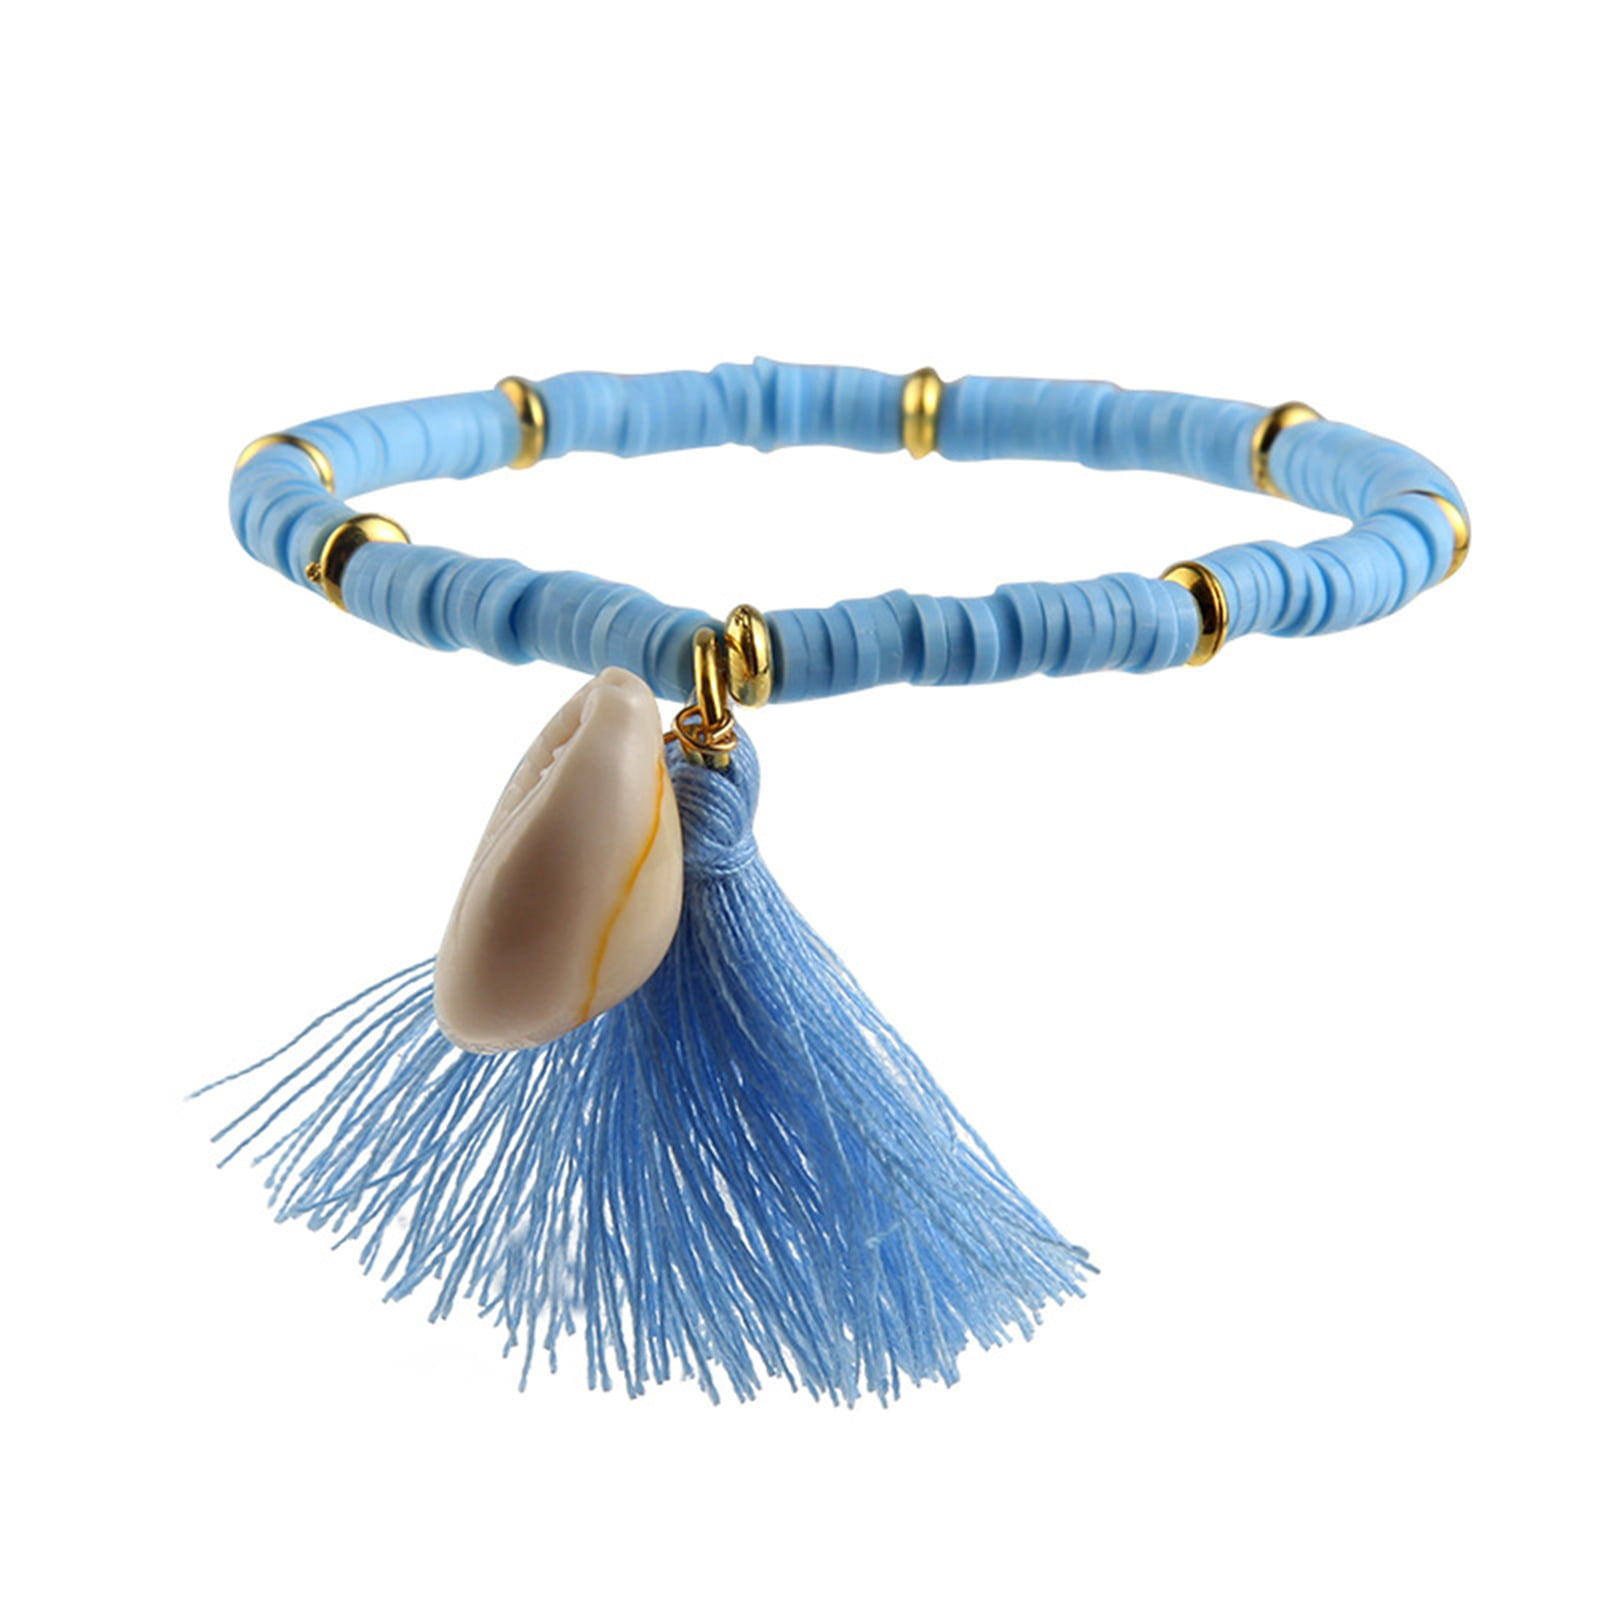 DIEZI Ethnic Tassel Crystal Beads Bracelets for Women Girls Gift Elastic  Rope Shell Leaves Charm Wrap